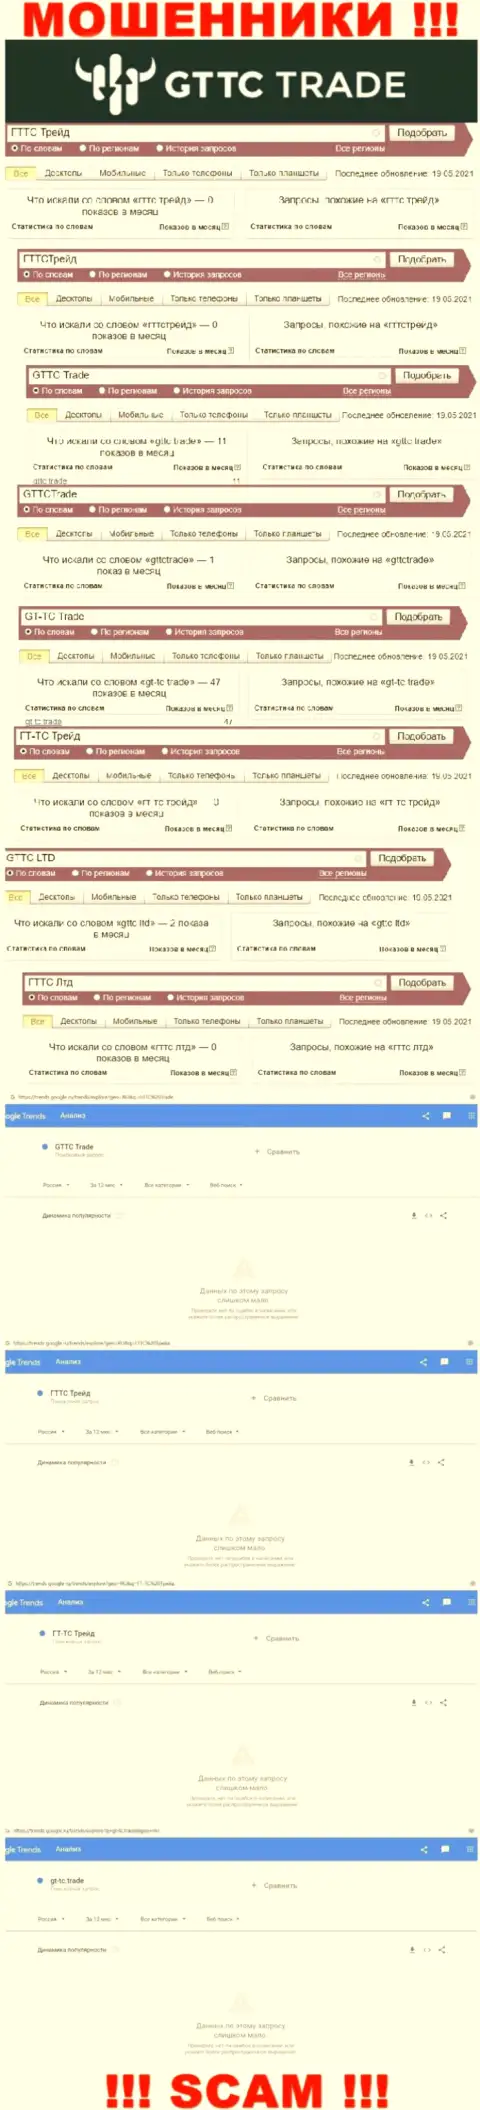 Количество online-запросов посетителями сети internet информации об мошенниках ГТ ТС Трейд